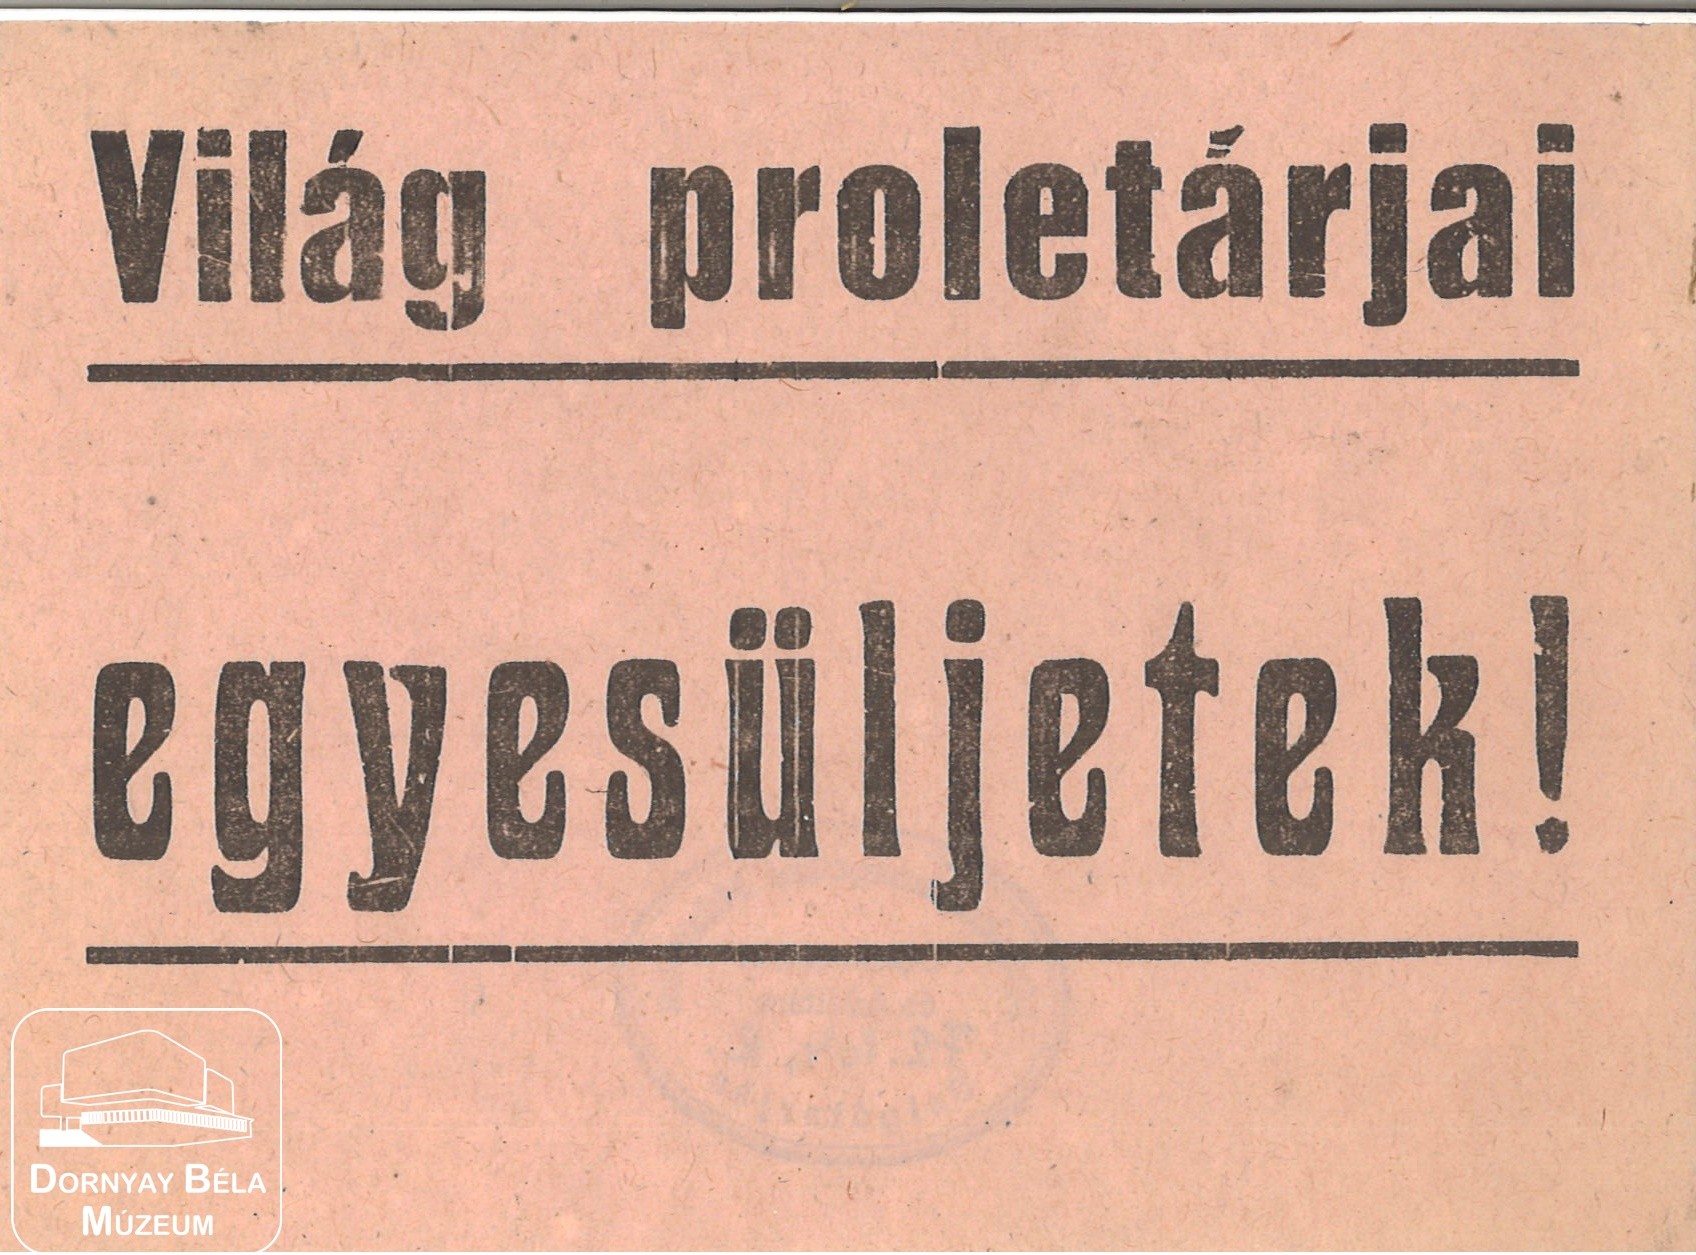 Világ proletárjai egyesüljetek! (Dornyay Béla Múzeum, Salgótarján CC BY-NC-SA)